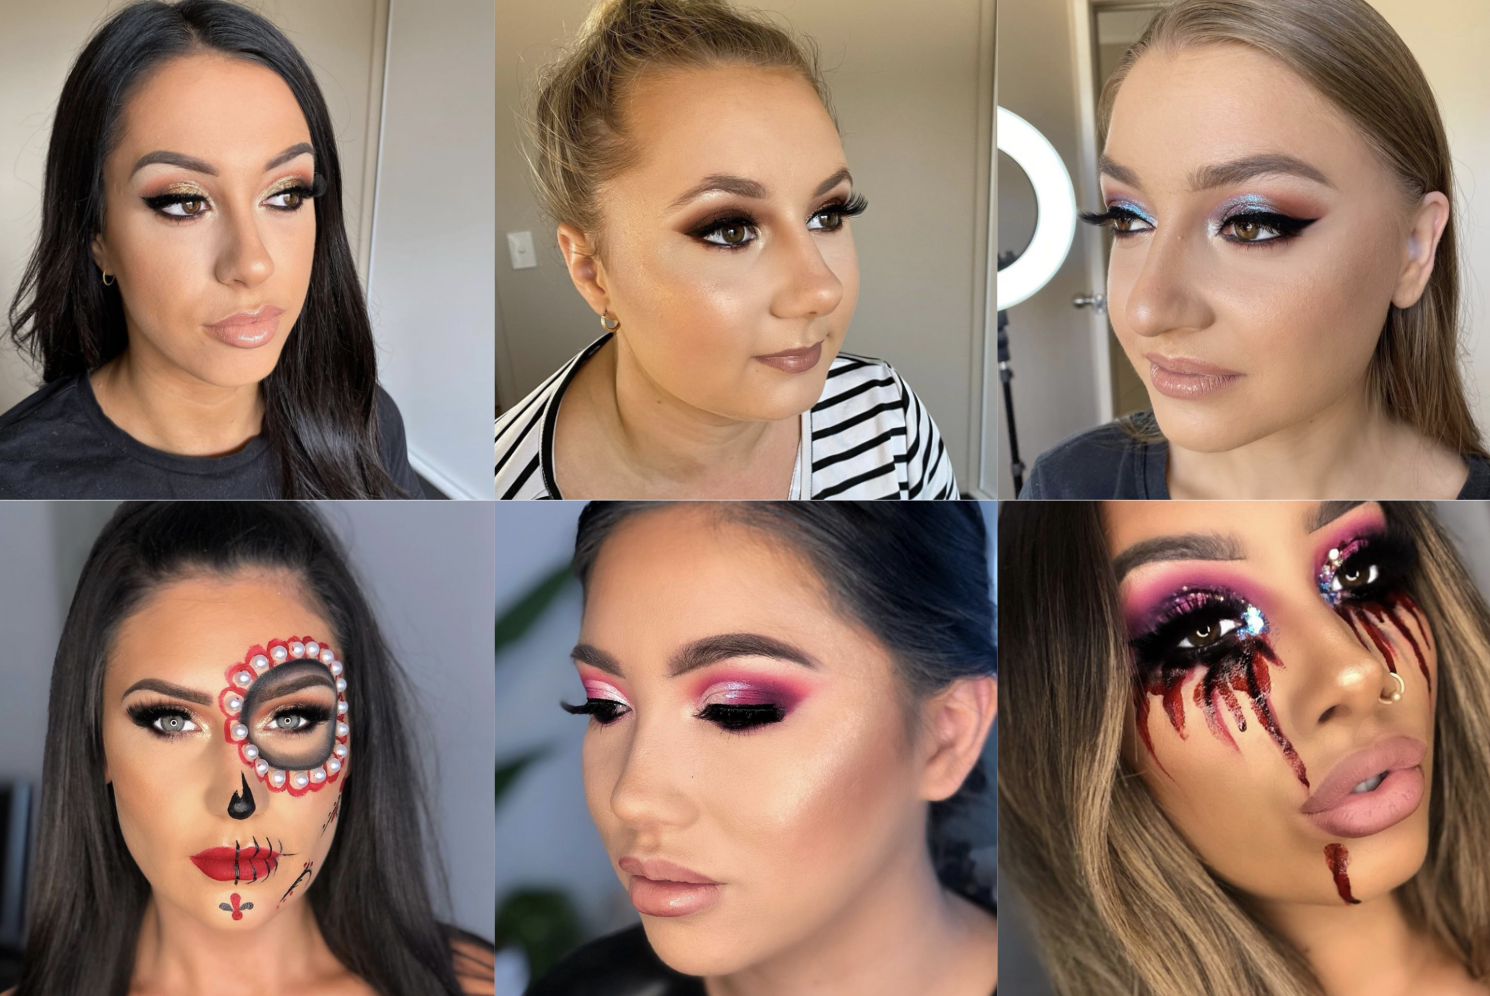  how do you become a makeup artist 